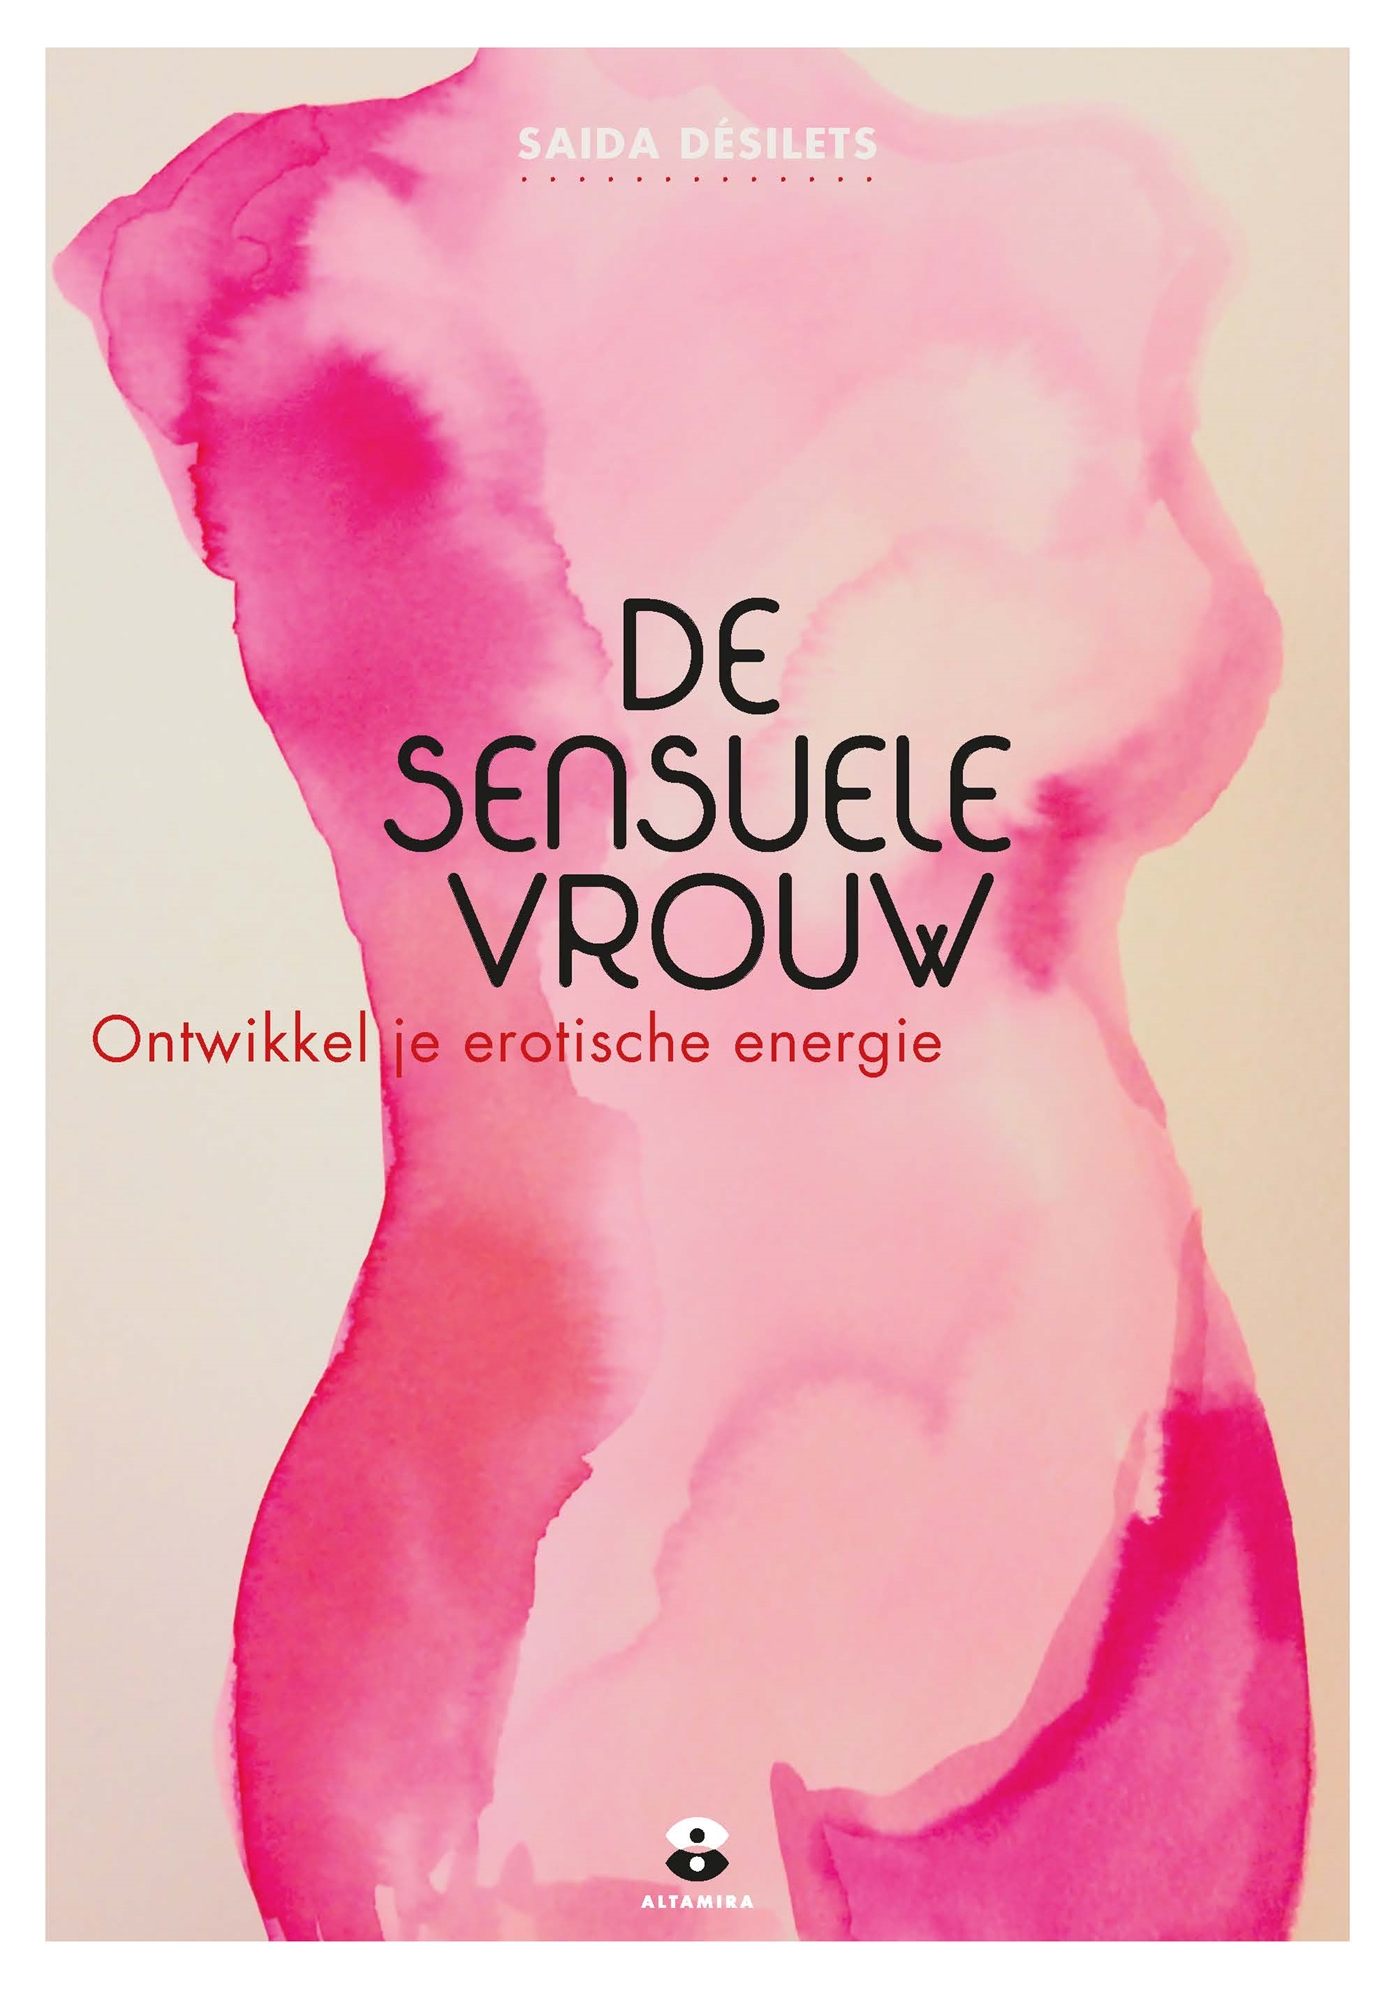 De sensuele vrouw (Ebook)